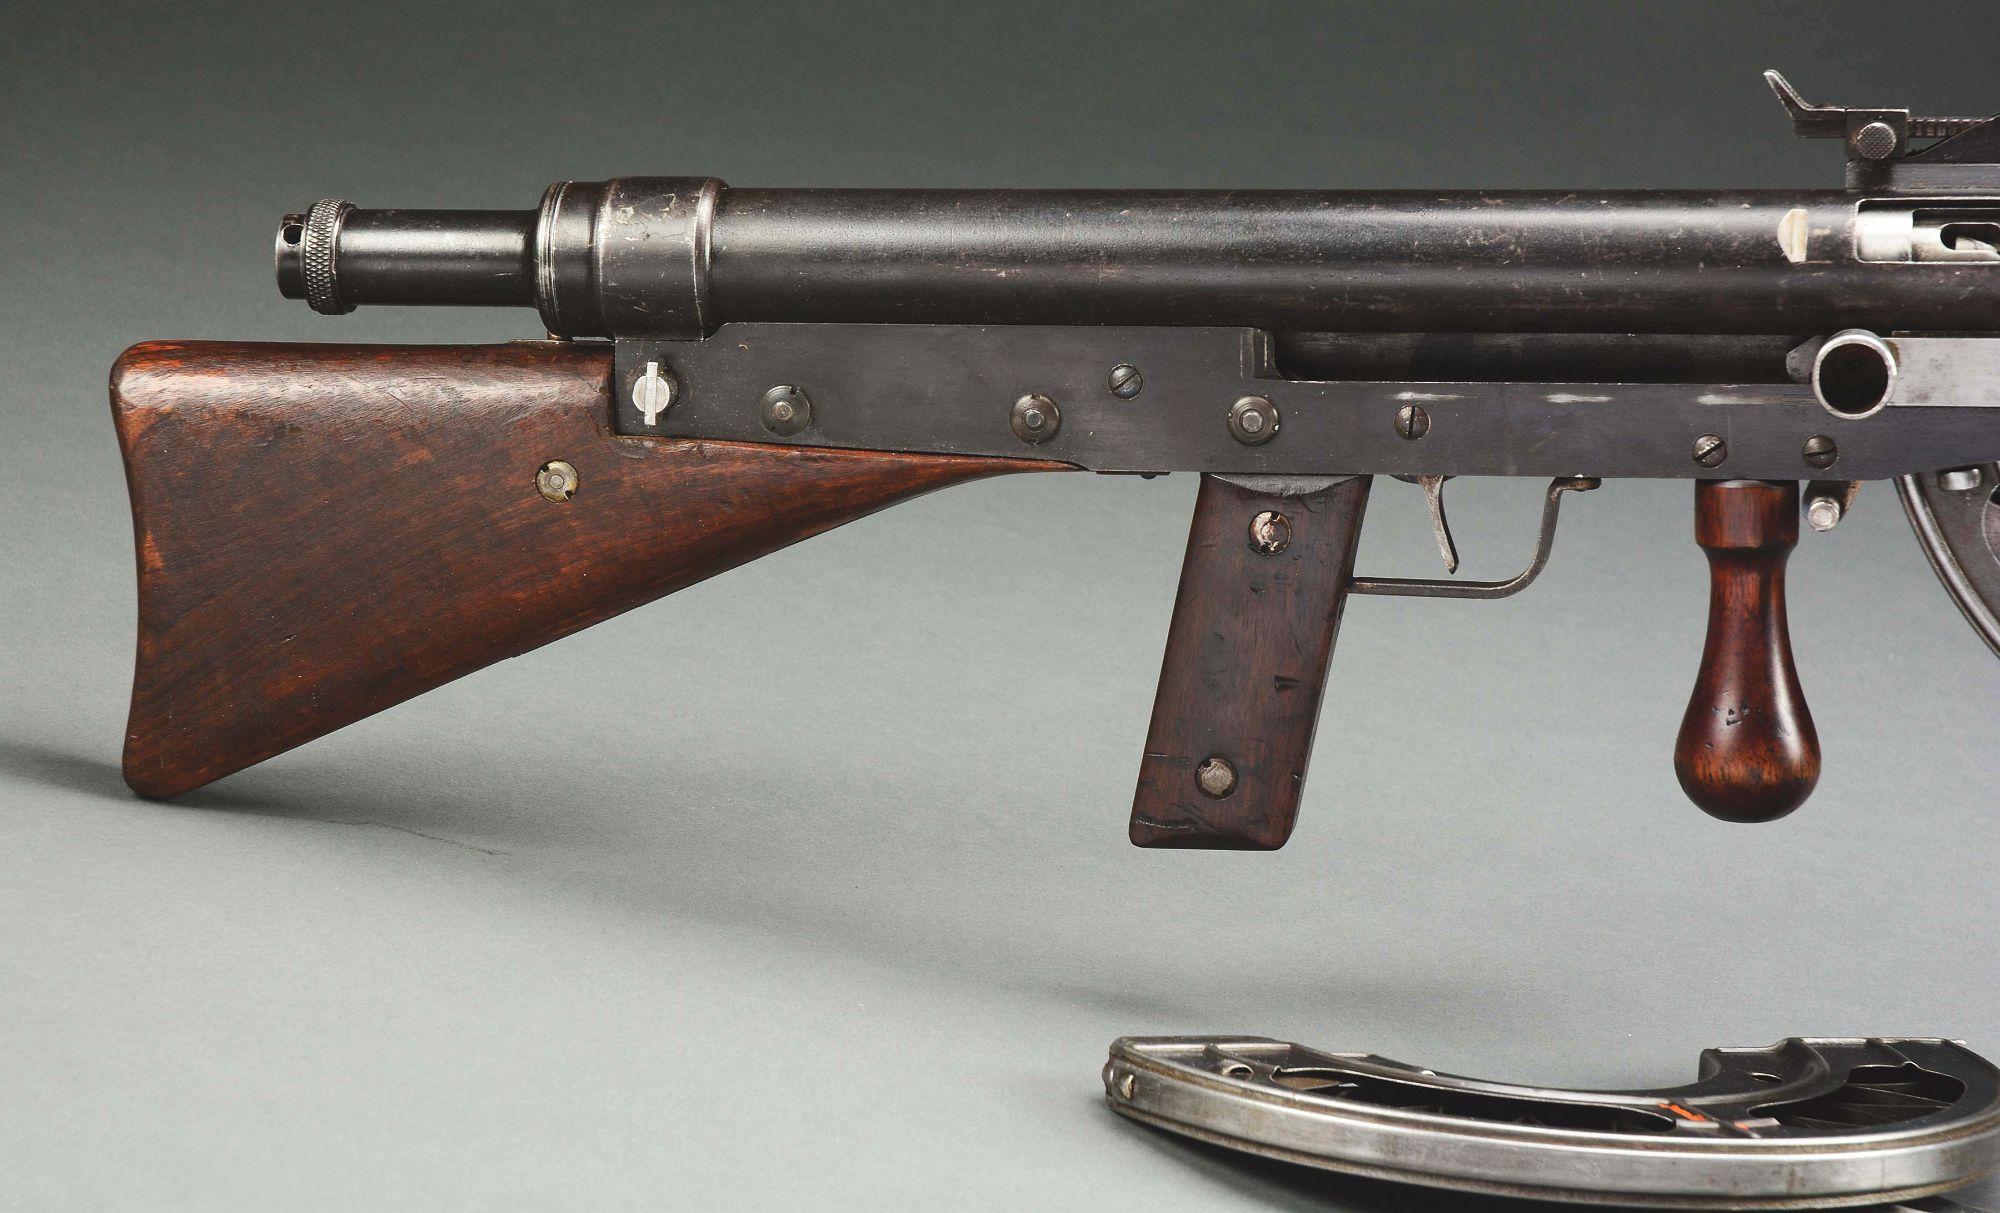 (N) FINE CONDITION SPECIMEN OF HISTORIC WORLD WAR I FRENCH CHAUCHAT MODEL 1915 MACHINE GUN (CURIO AN